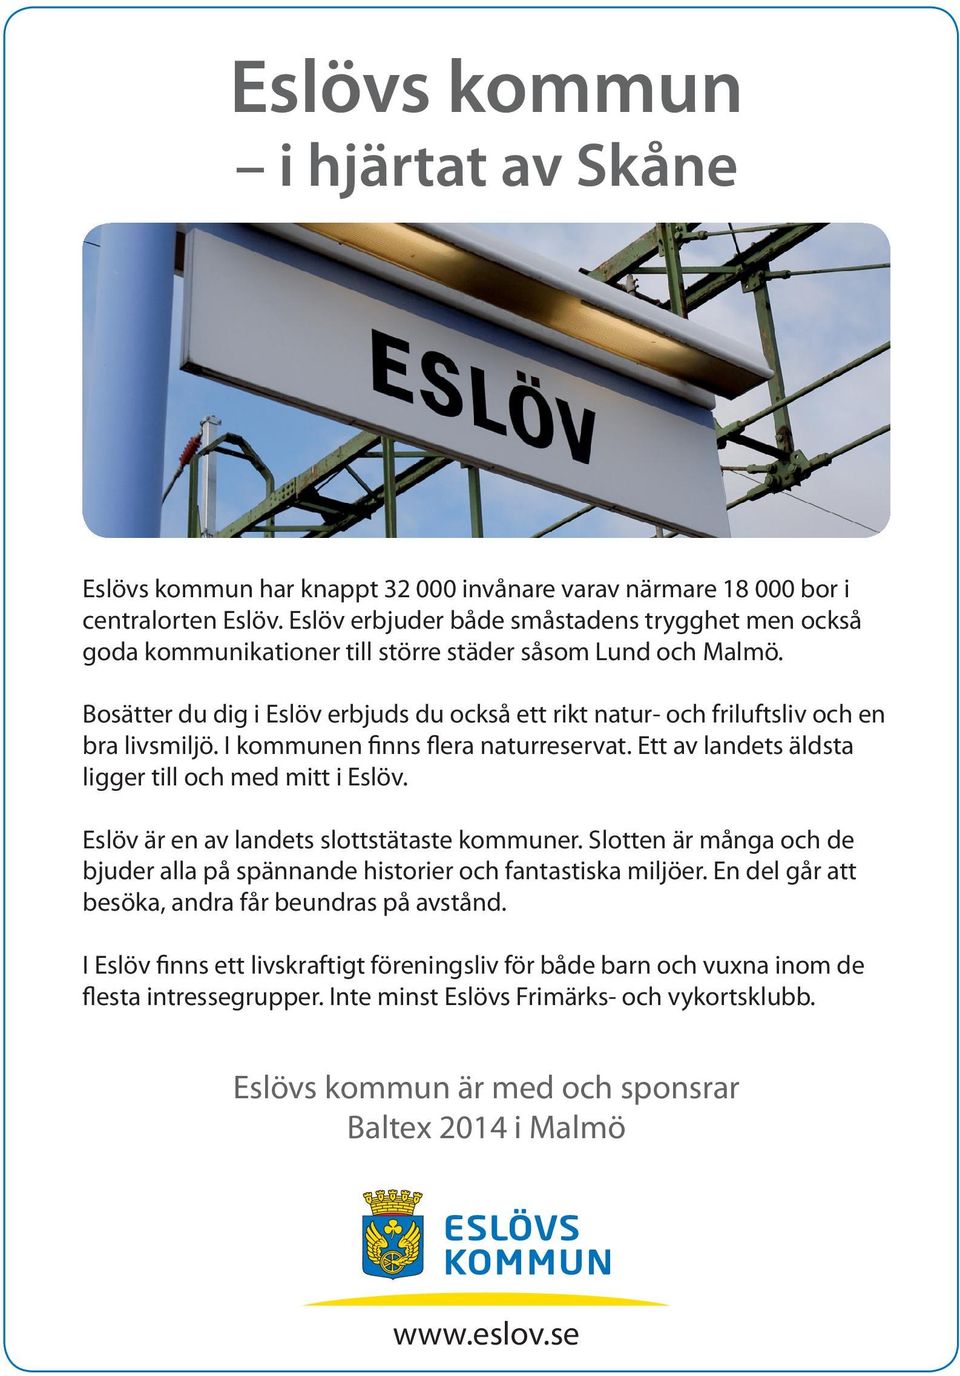 Bosätter du dig i Eslöv erbjuds du också ett rikt natur- och friluftsliv och en bra livsmiljö. I kommunen finns flera naturreservat. Ett av landets äldsta ligger till och med mitt i Eslöv.